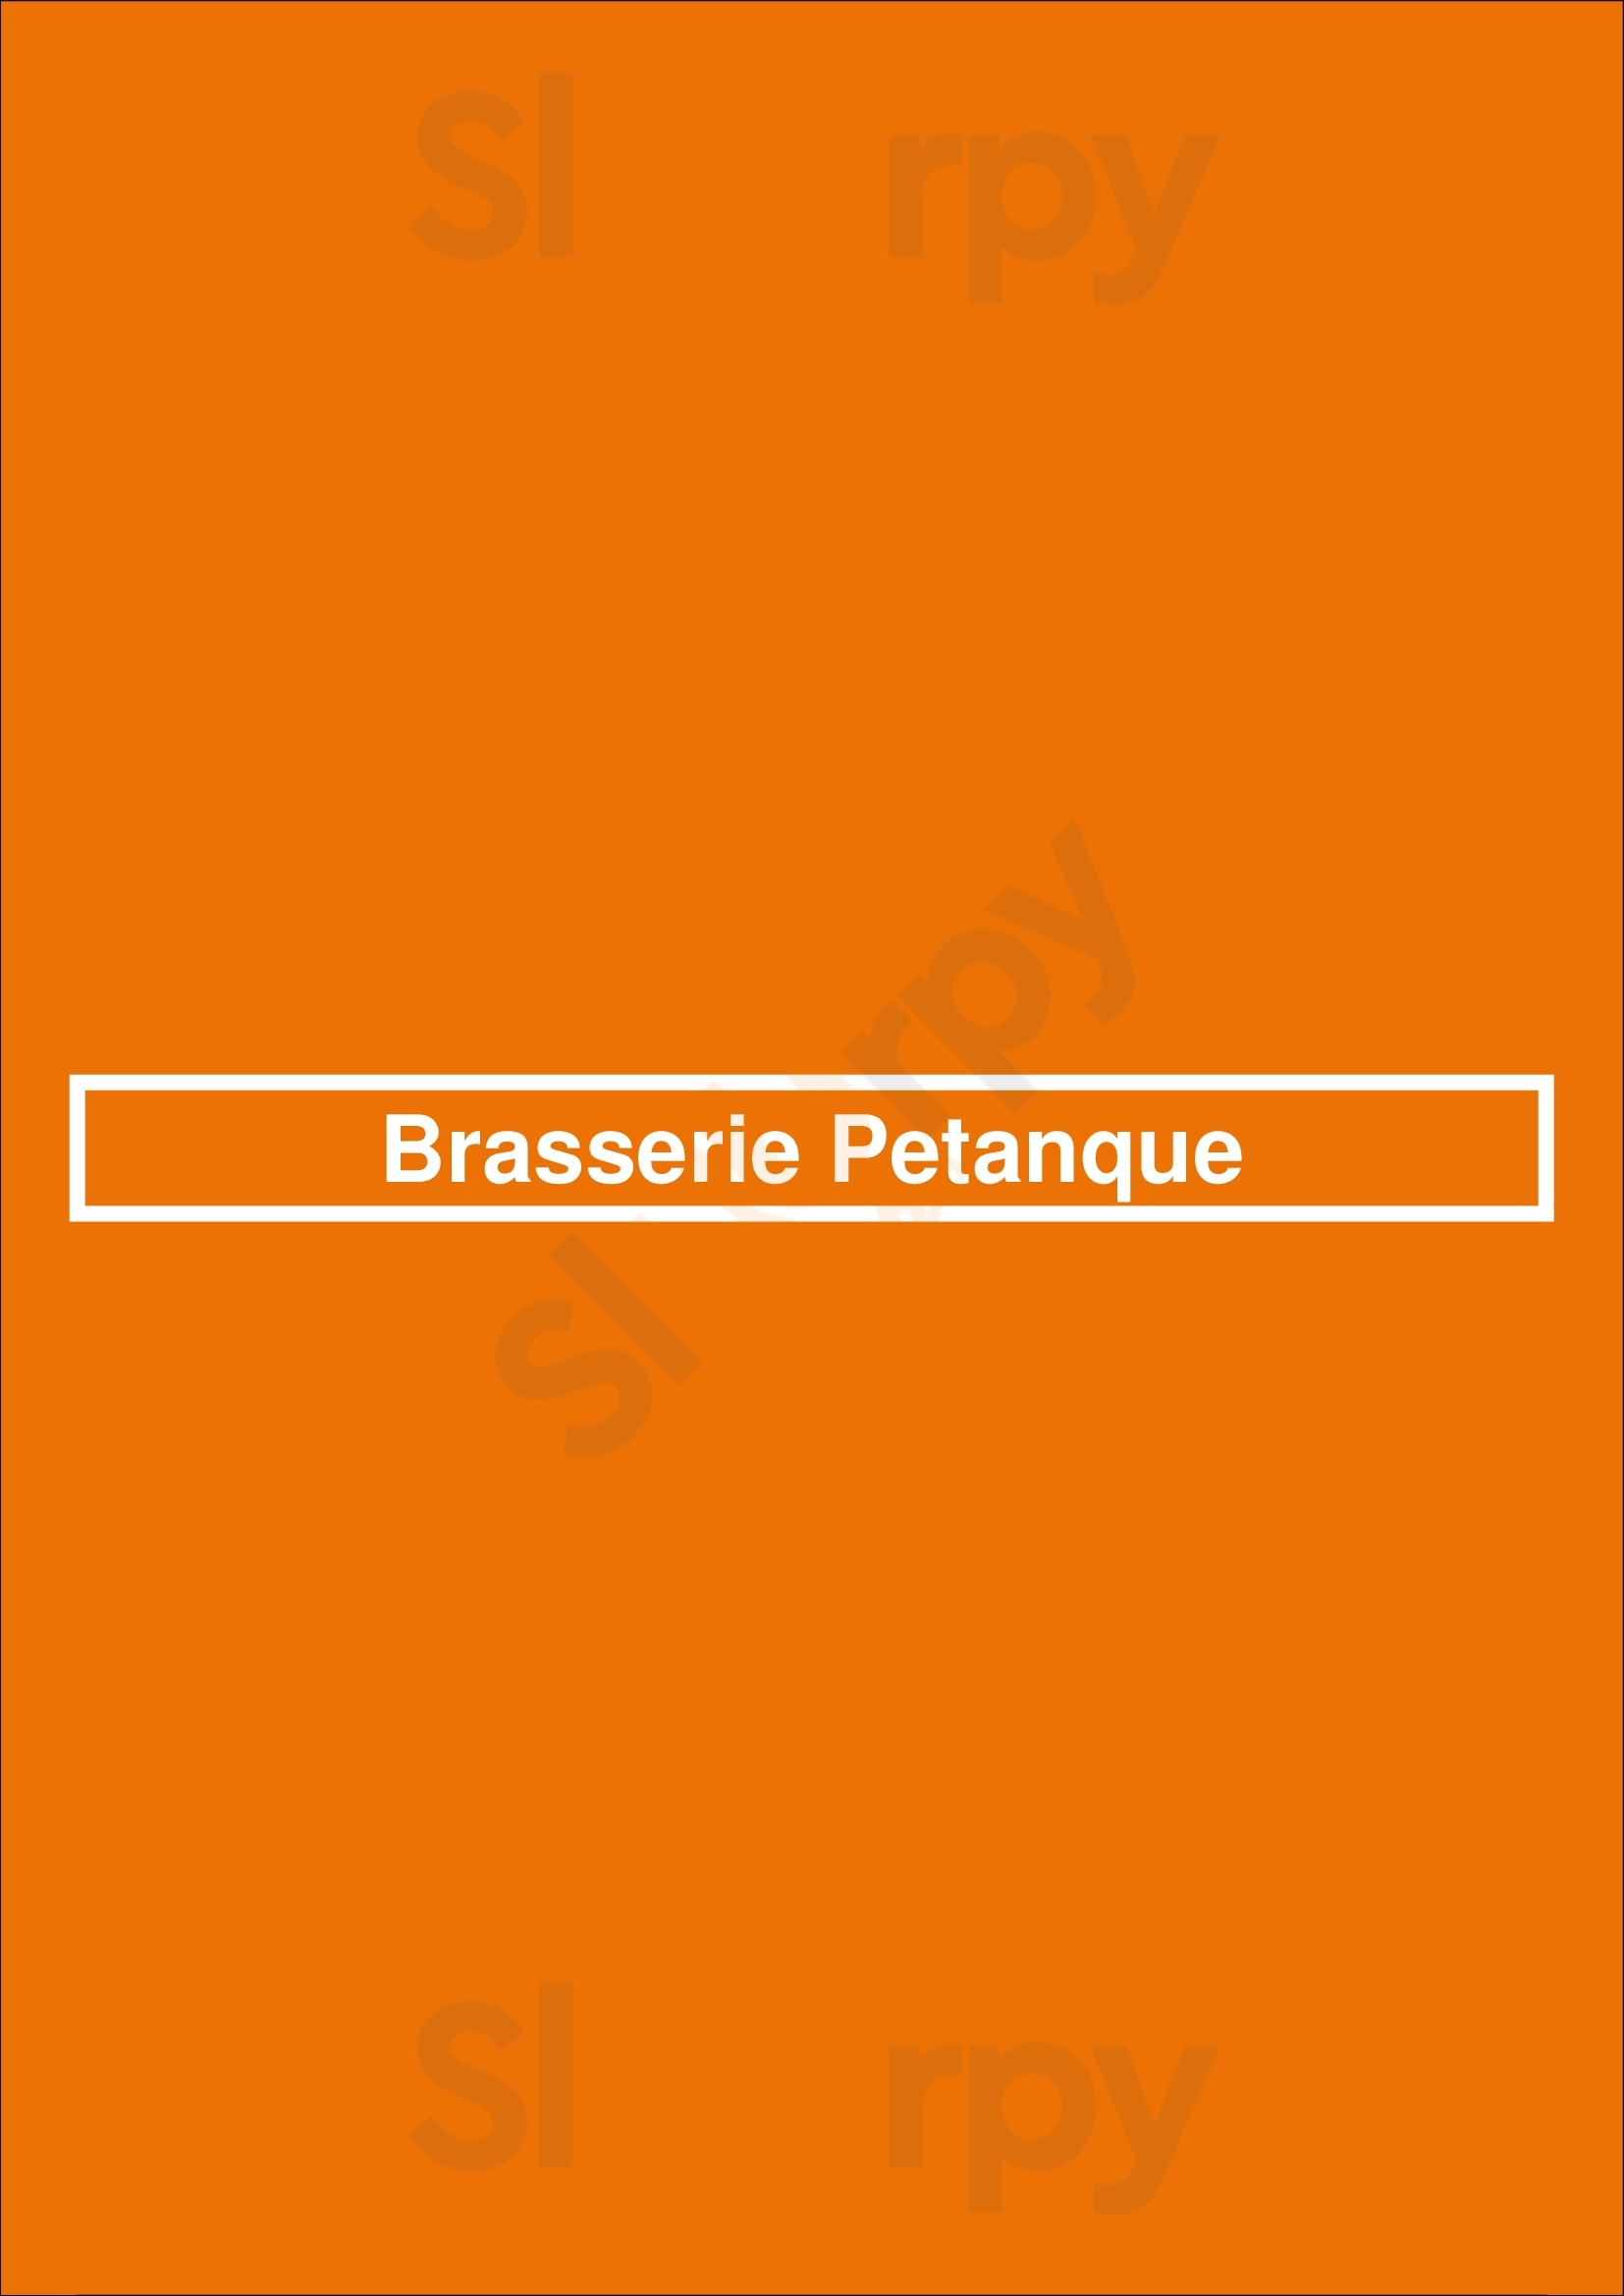 Brasserie La Petanque Buenos Aires Menu - 1